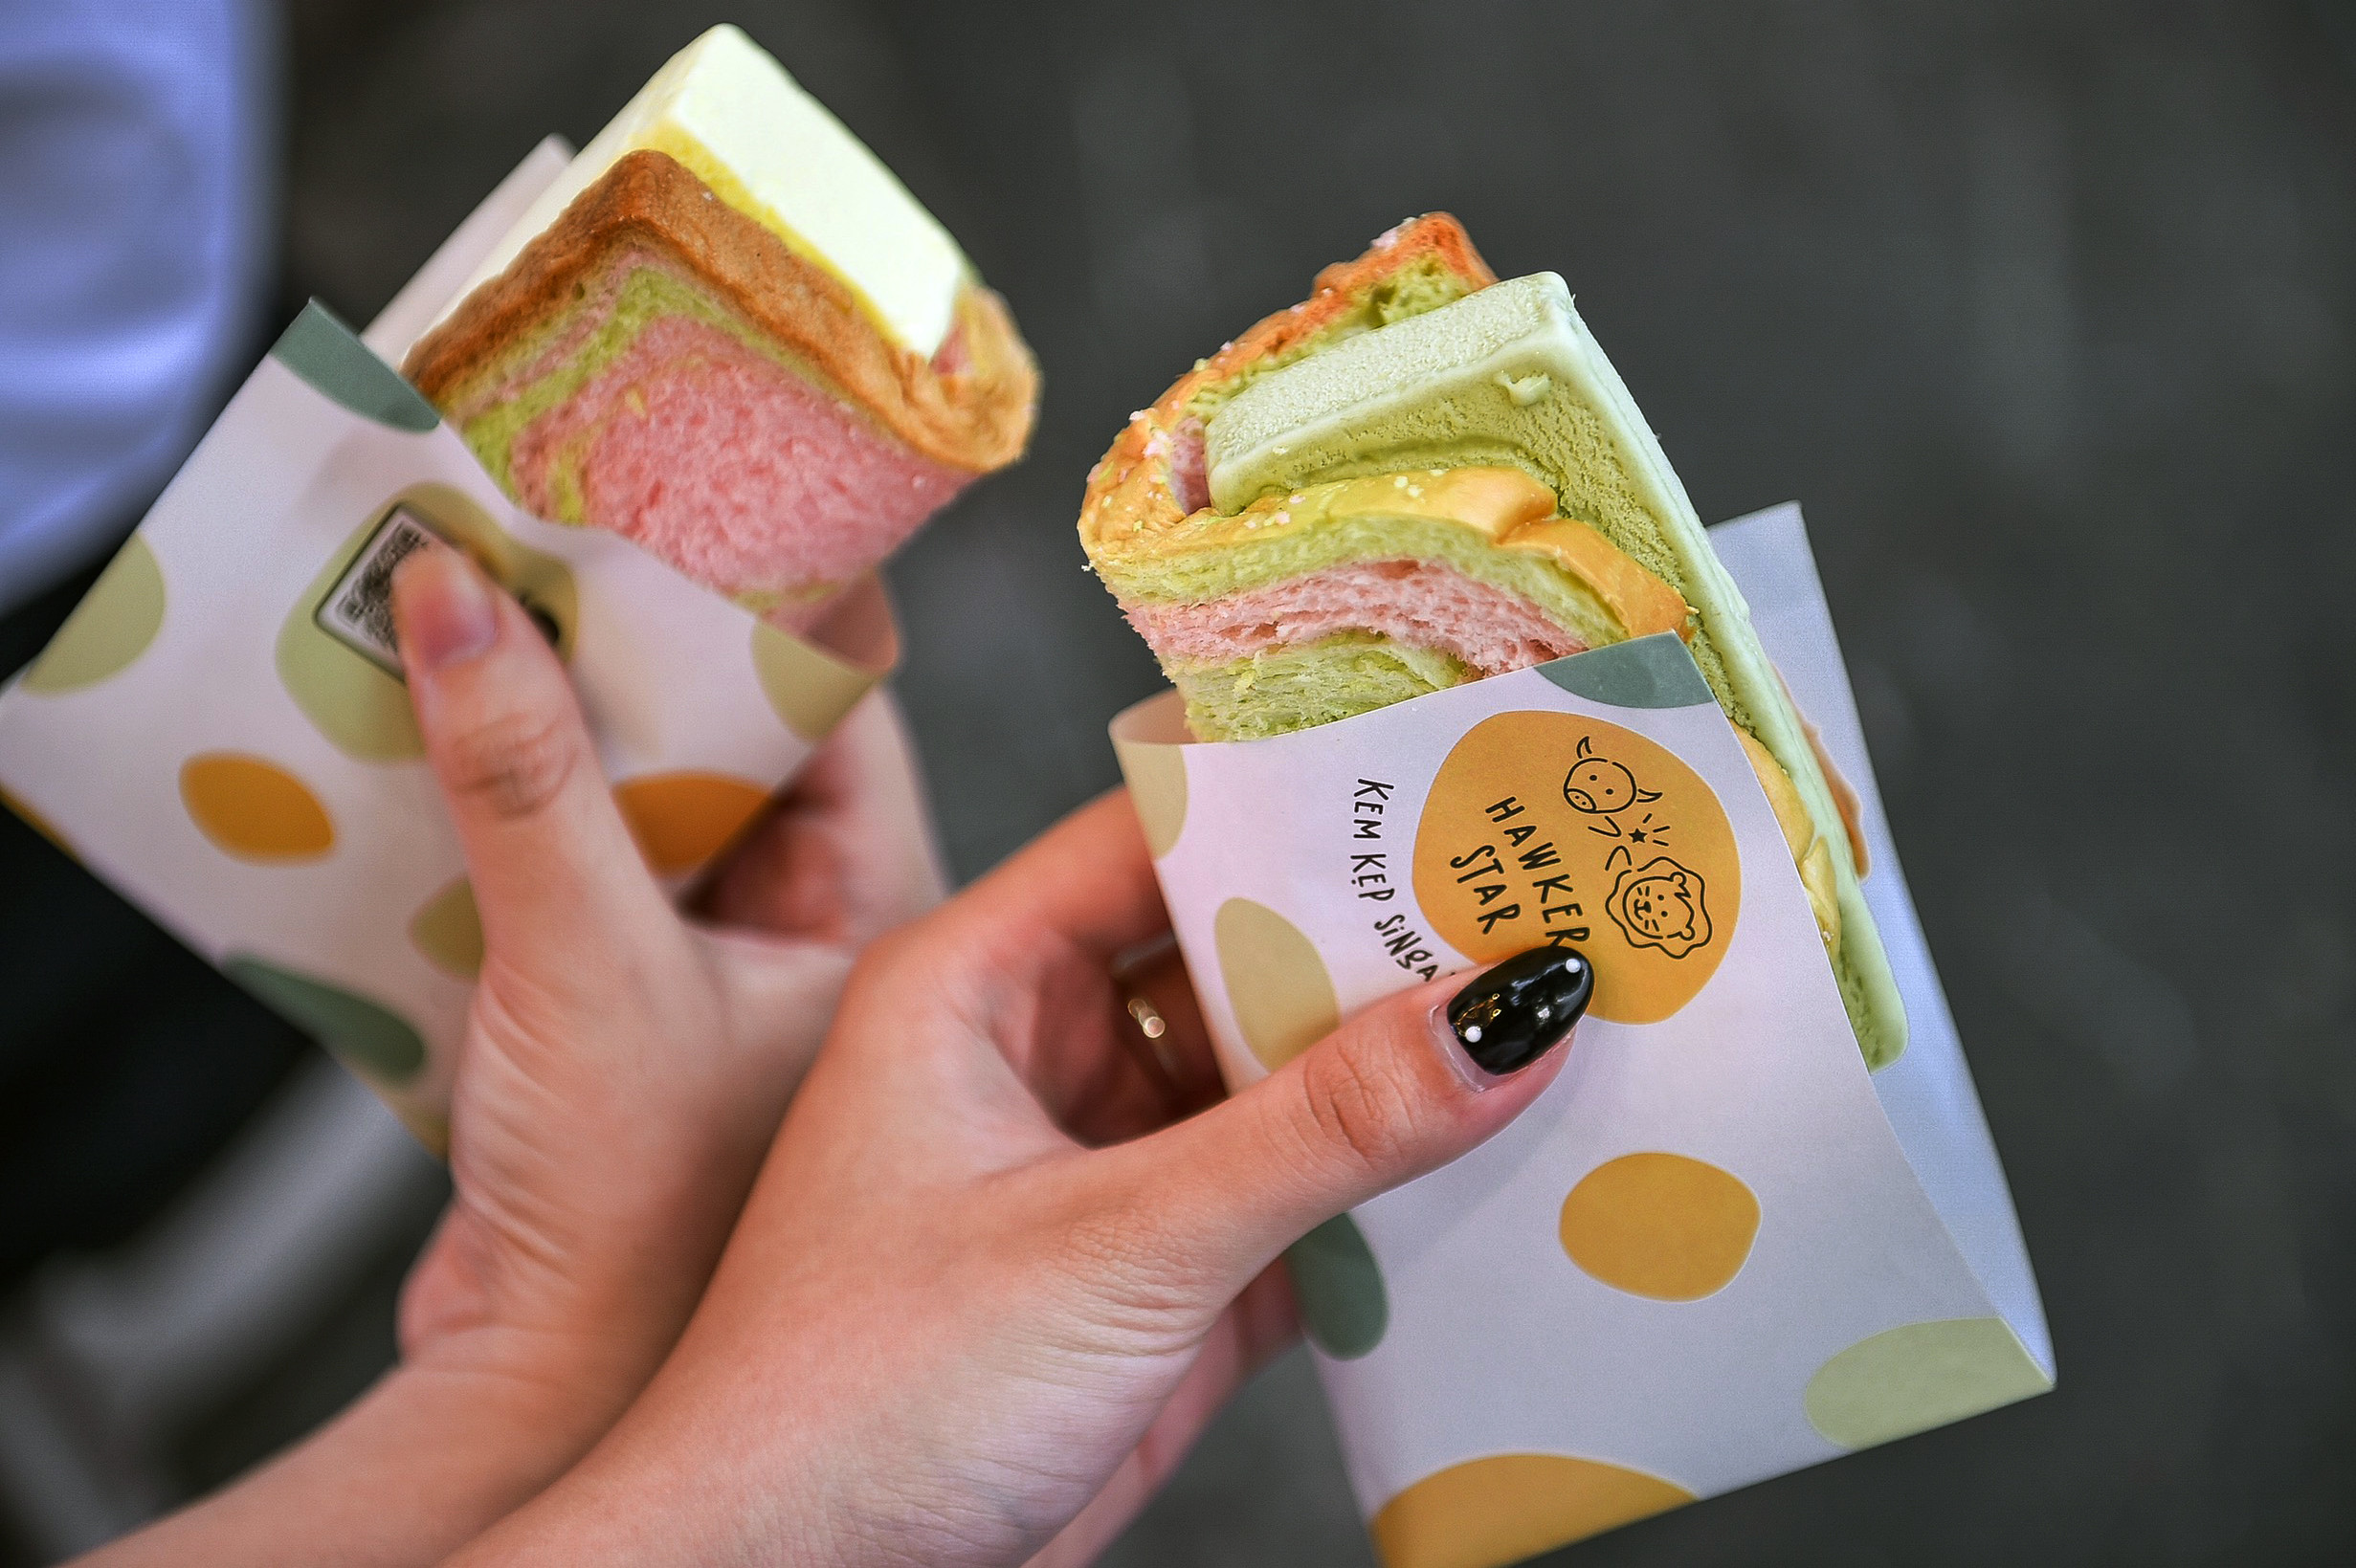 Tò mò với kem kẹp, món quà vặt nổi tiếng Singapore tại Hà Nội